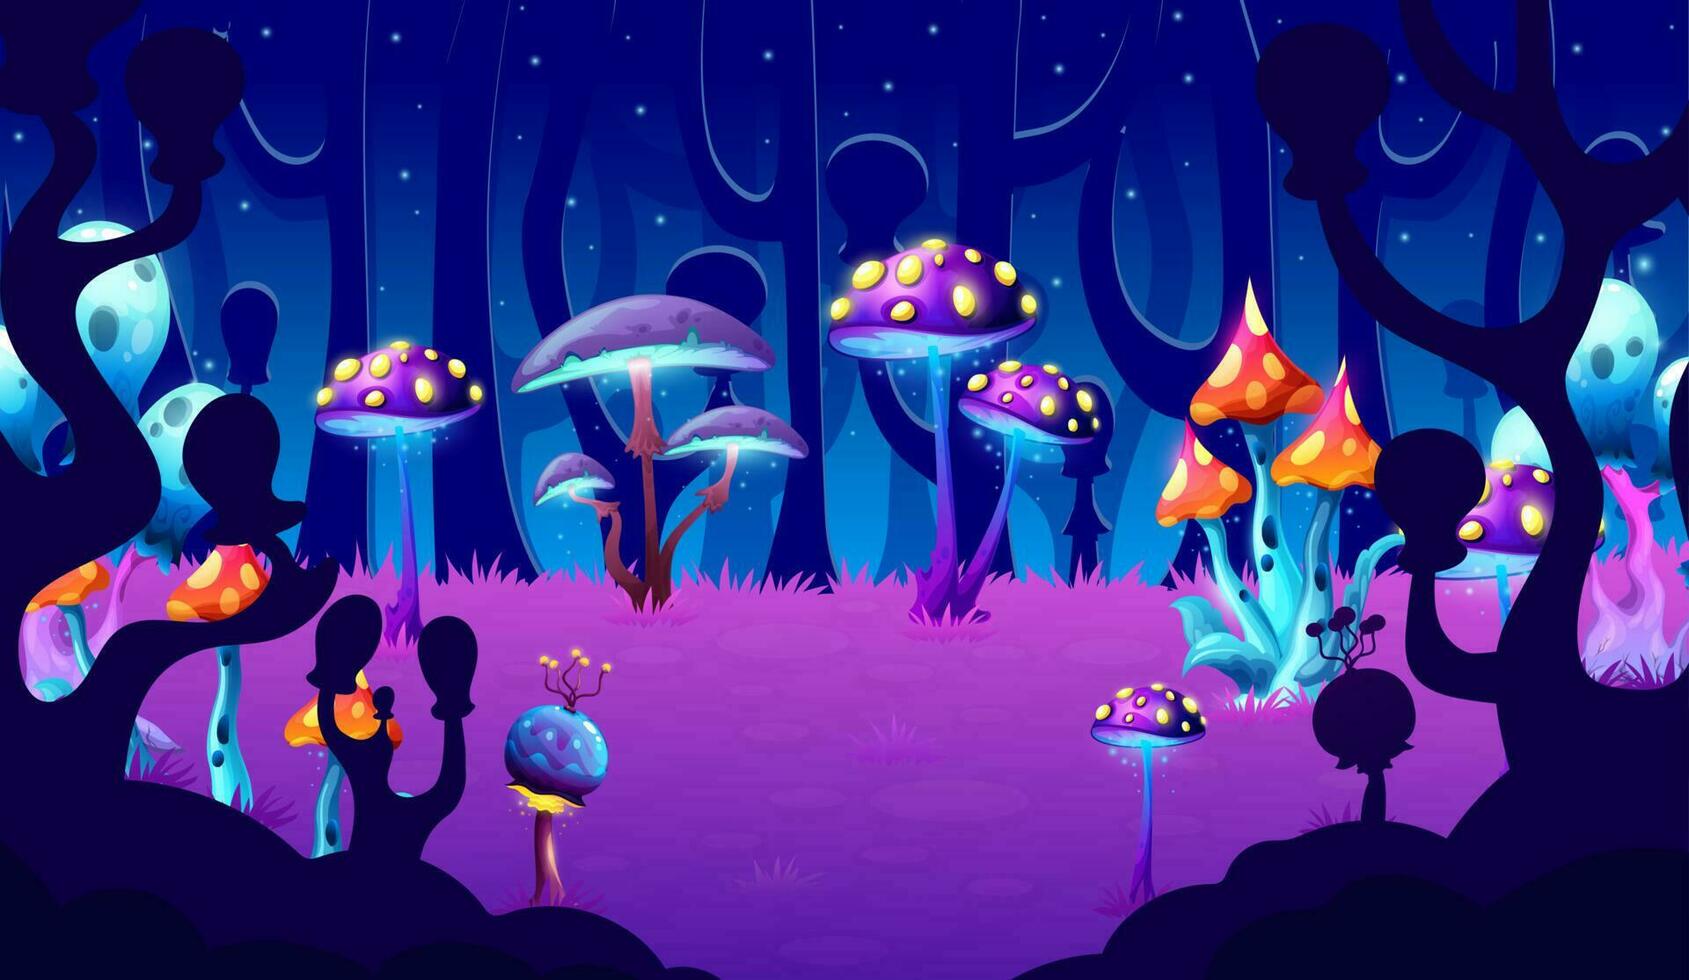 Fantasy mushrooms forest, game level landscape vector